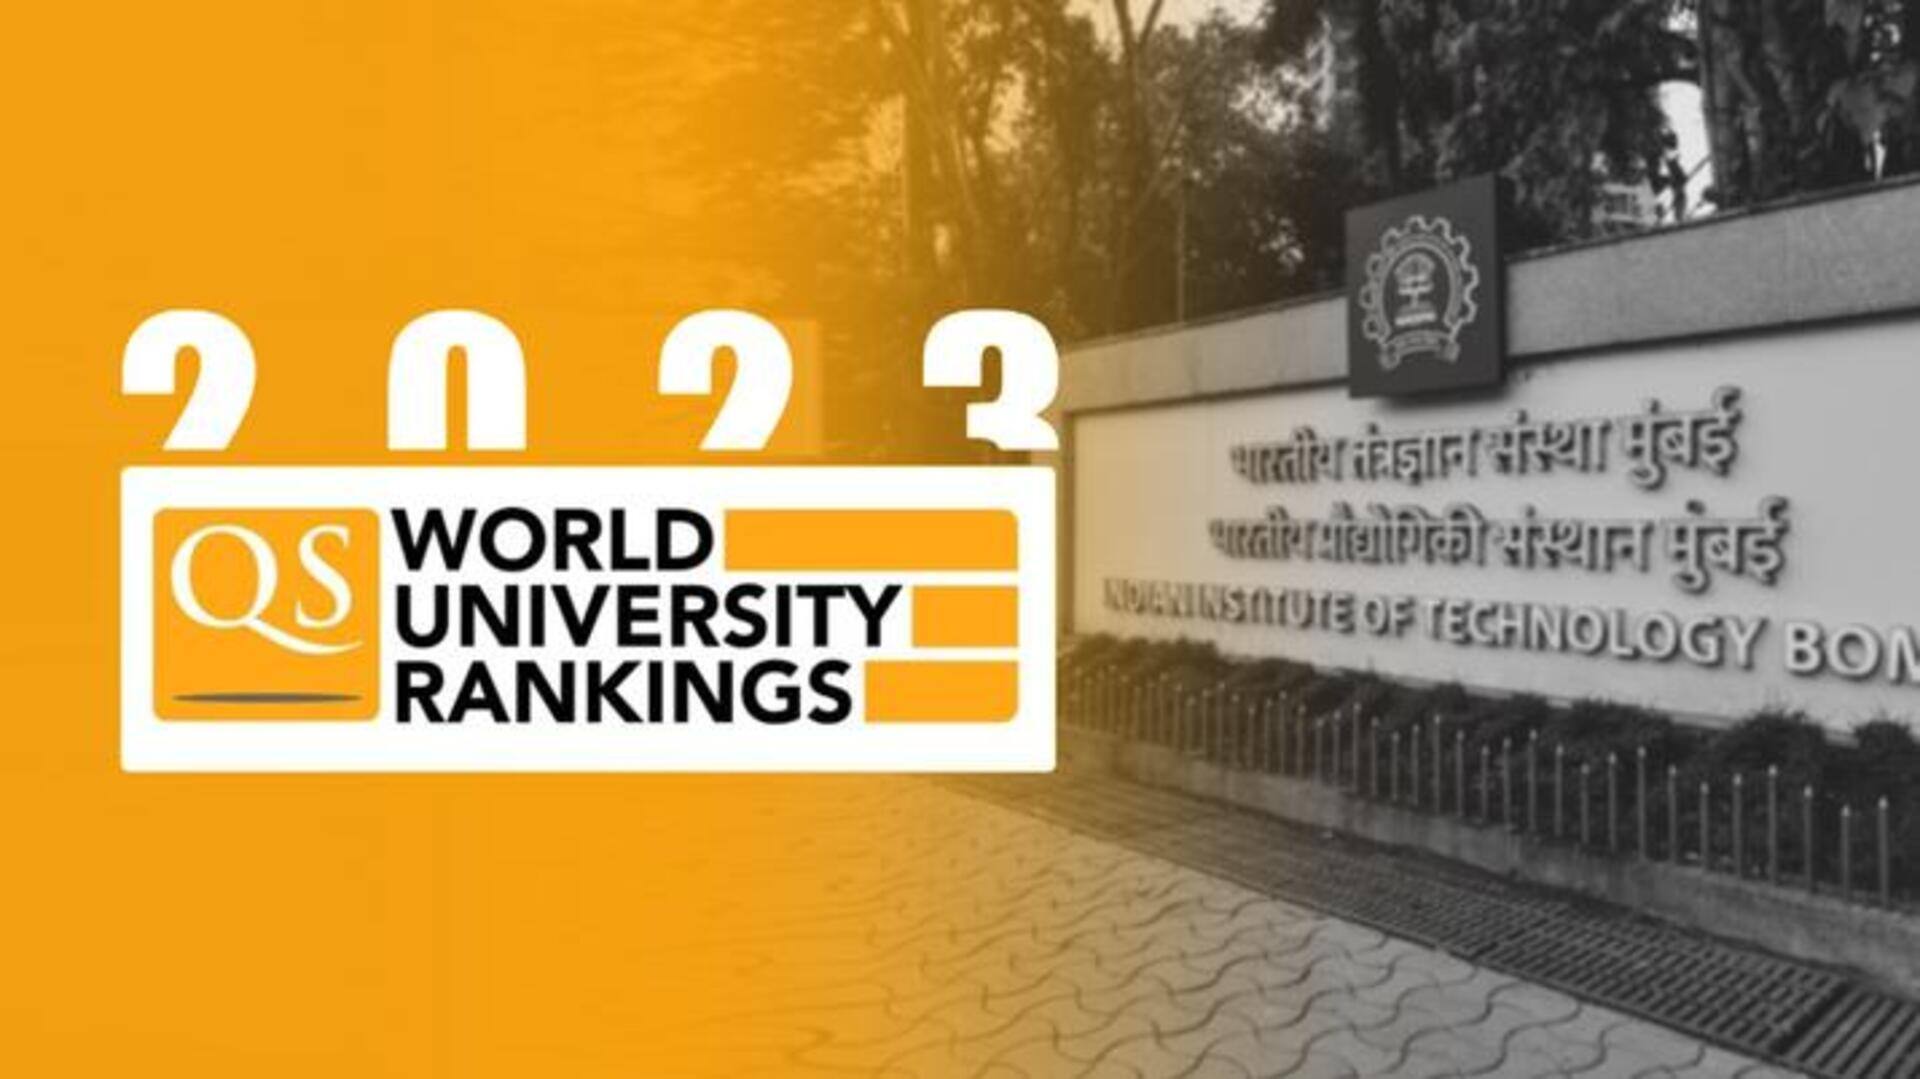 QS वर्ल्ड यूनिवर्सिटी रैंकिंग में शीर्ष 150 विश्वविद्यालयों में शामिल हुआ IIT बॉम्बे